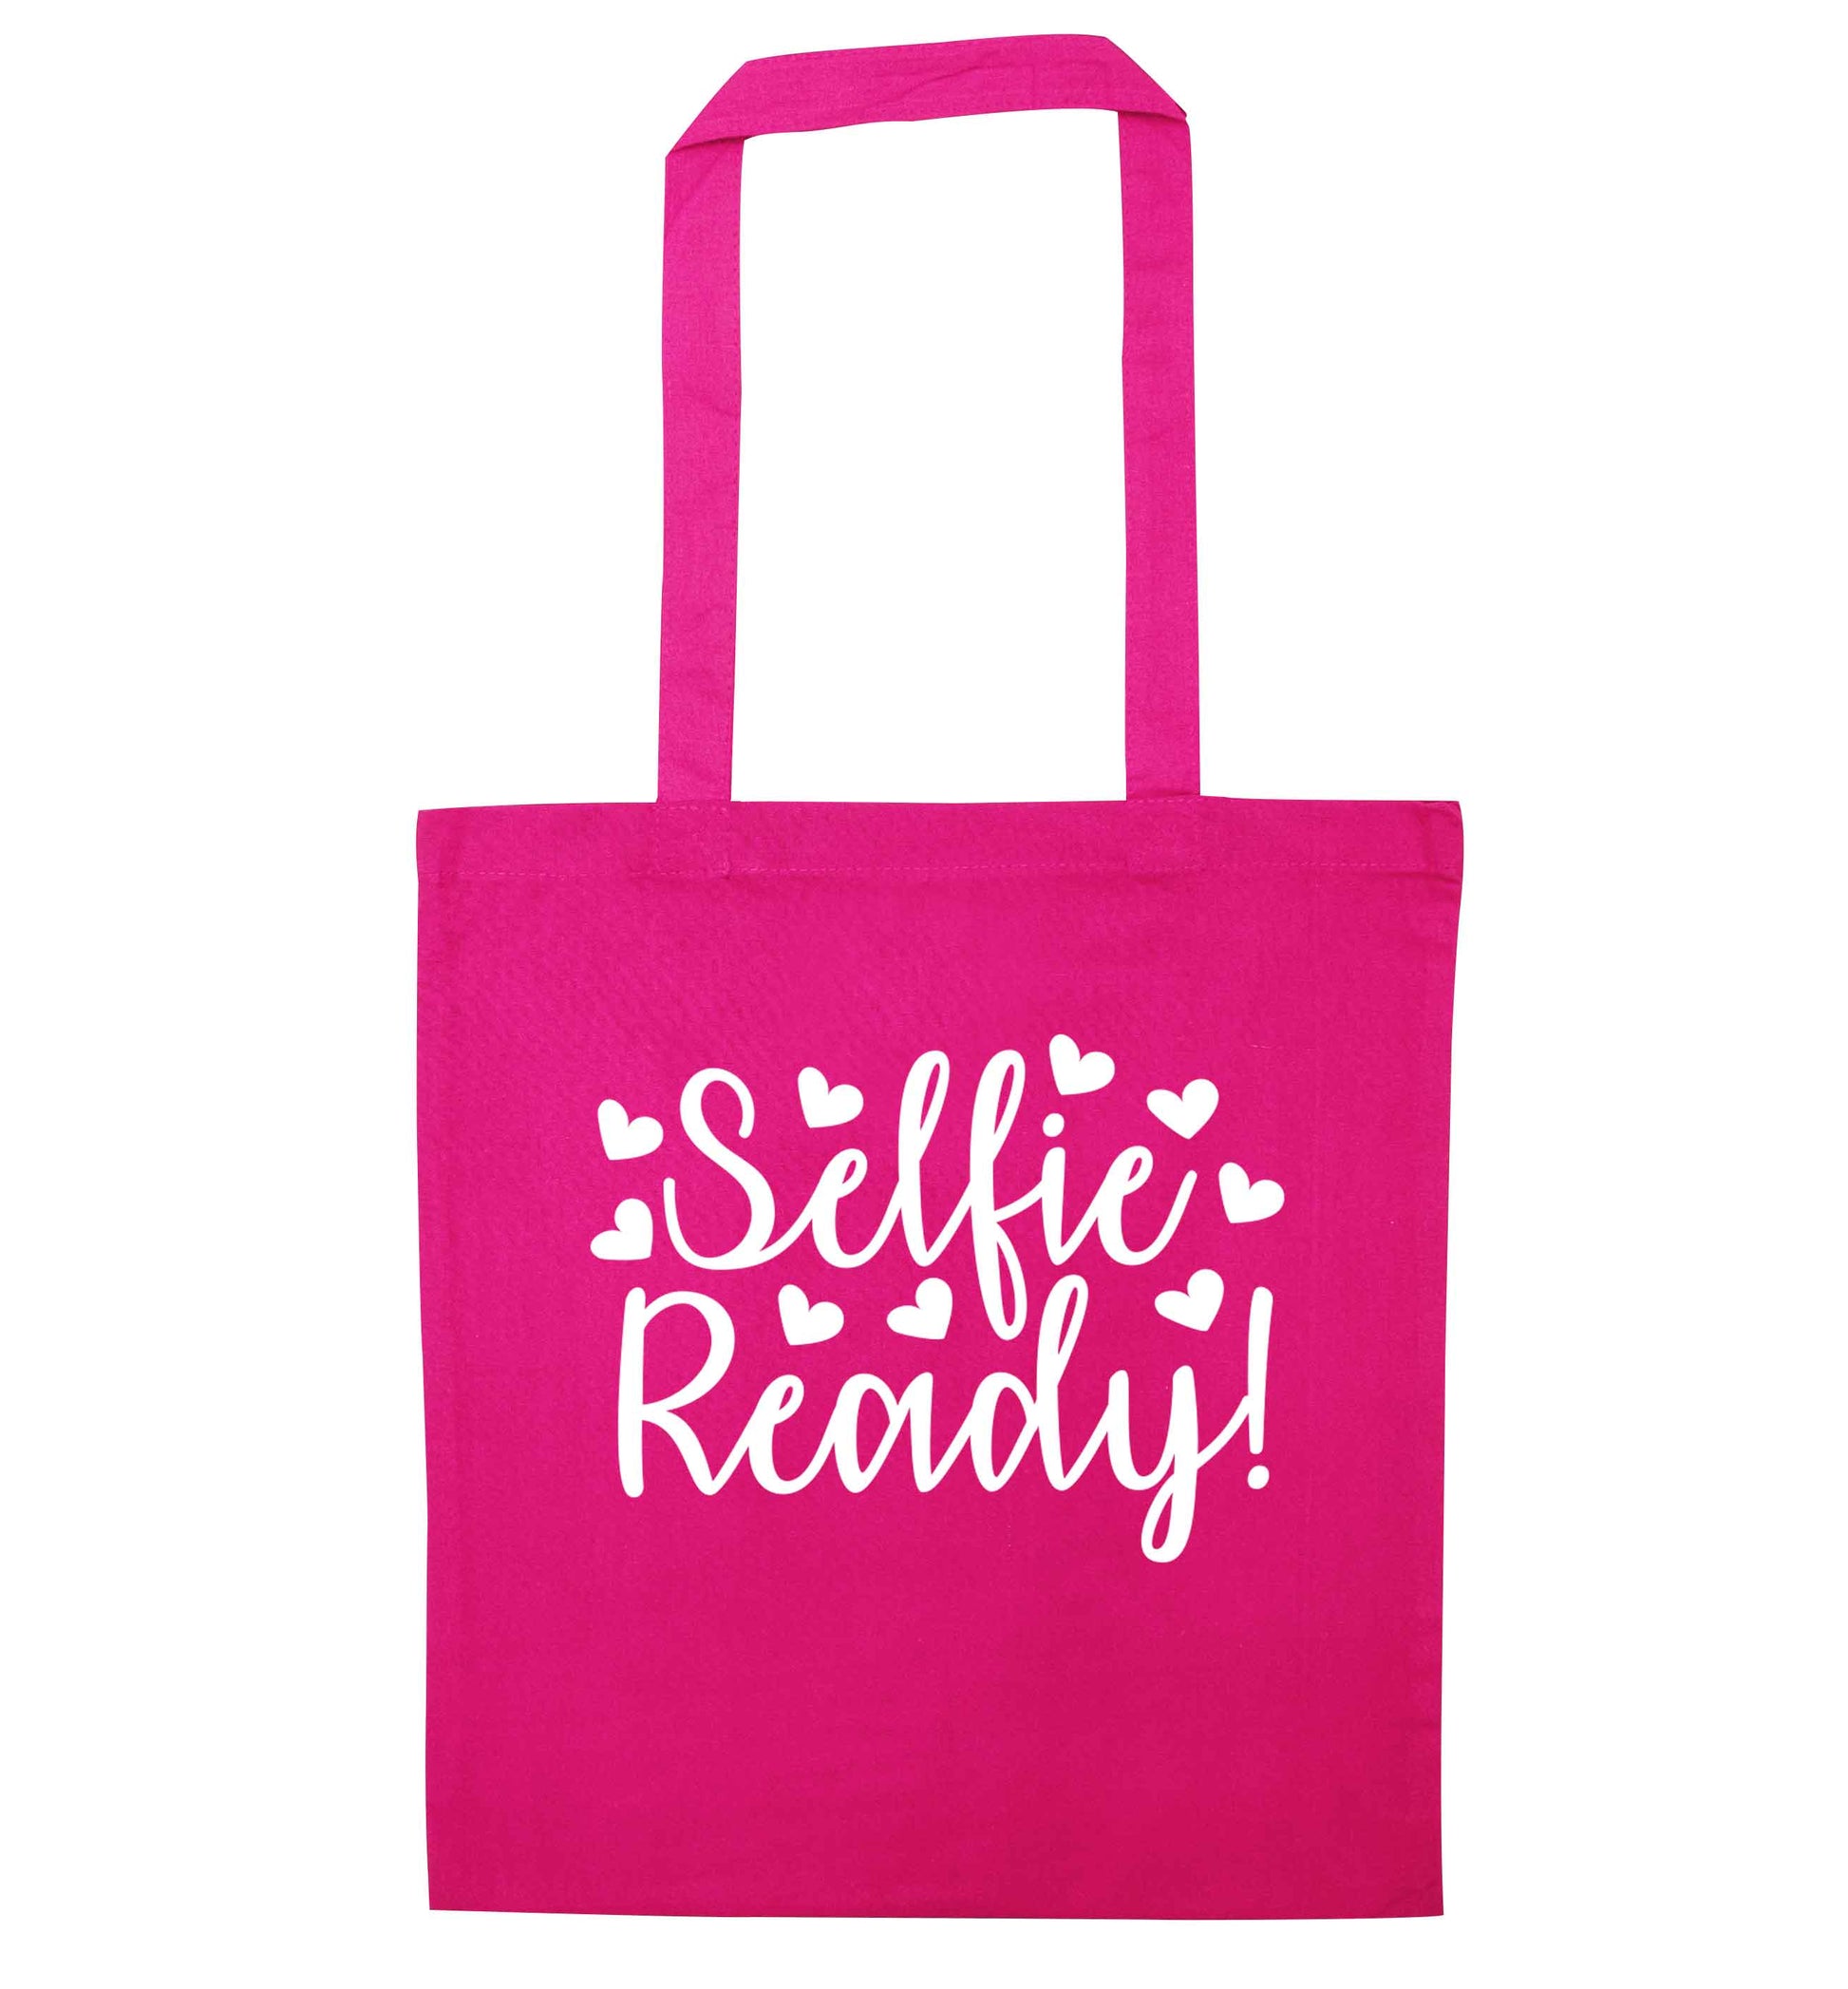 Selfie ready pink tote bag